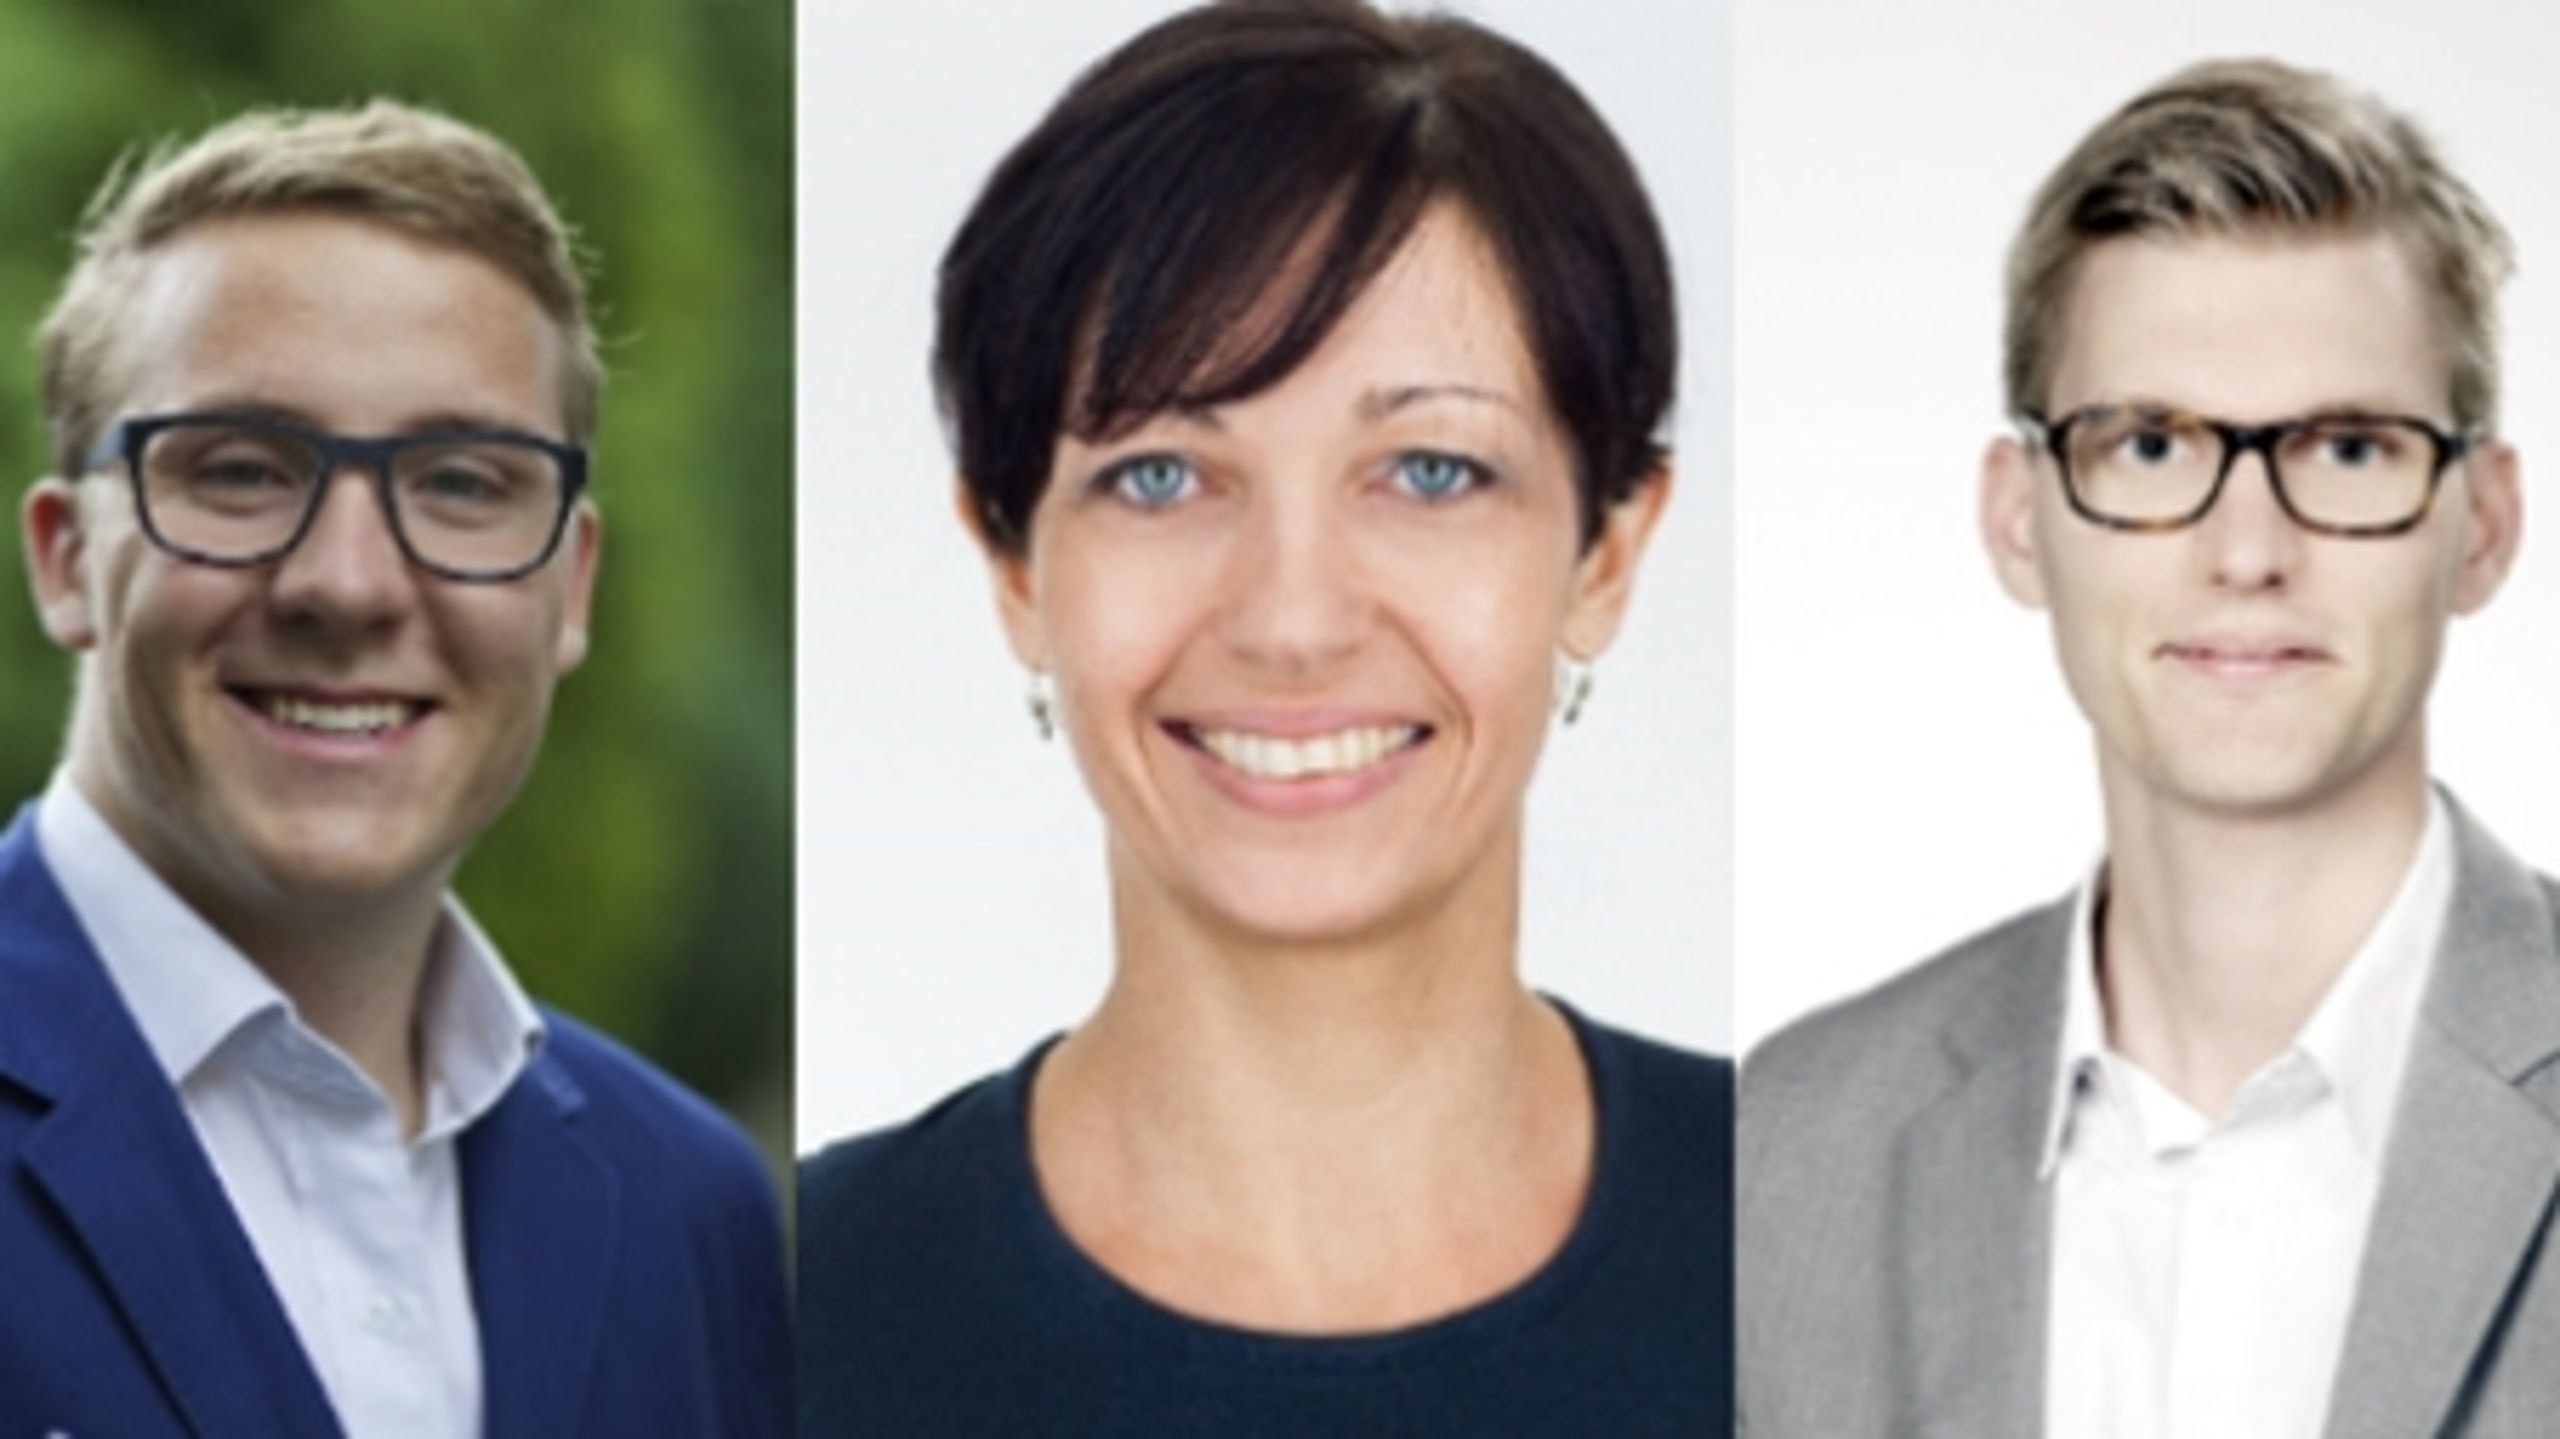 Bergur Løkke Rasmussen (V), Karin Friis Bach (R) og Lasse Frimand Jensen (S) har alle tætte forhold til kendte politikere og stiller nu op til kommune- og regionsvalget.